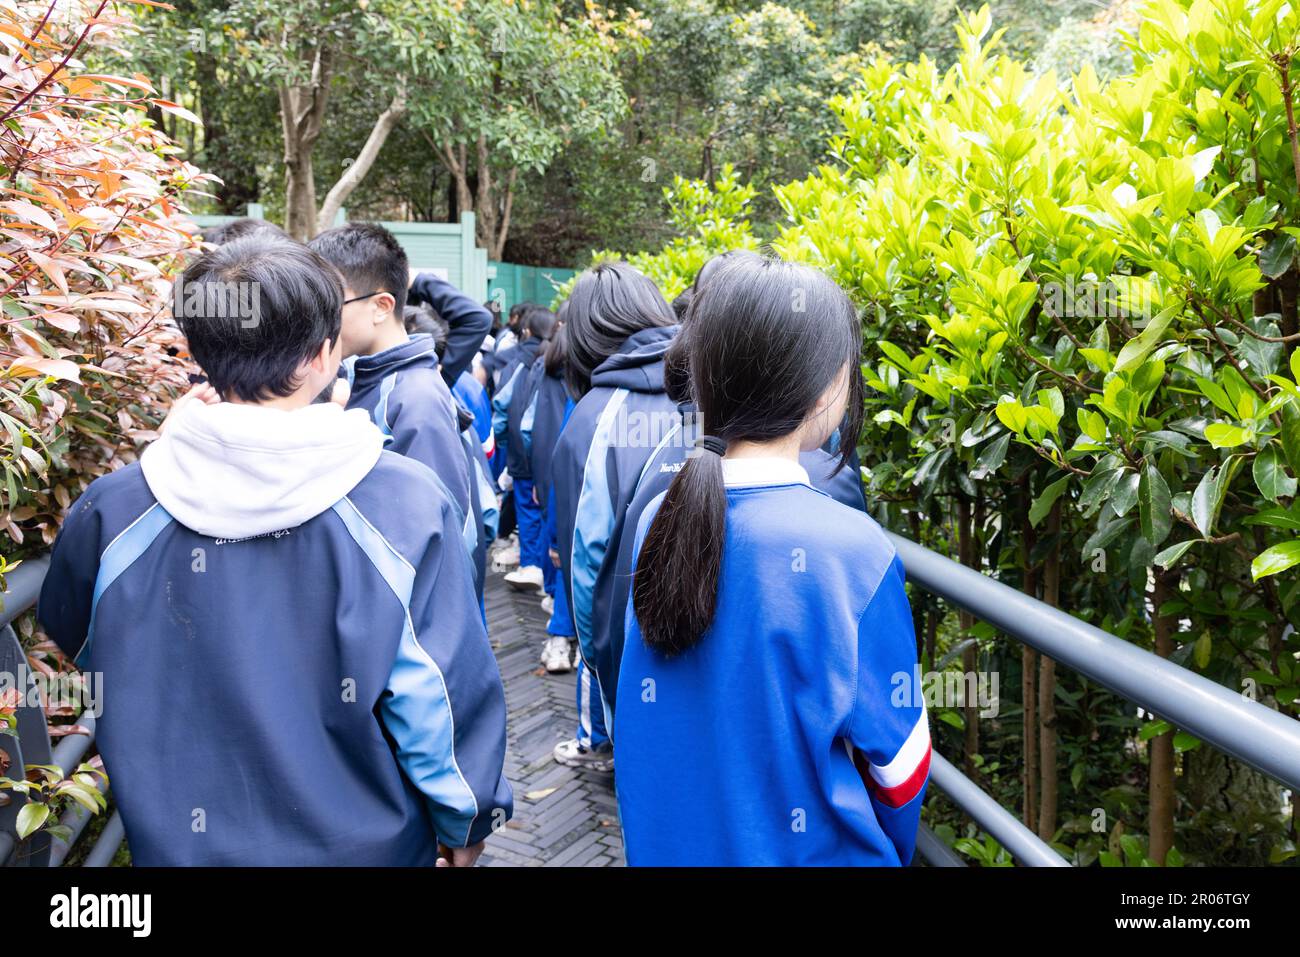 Vue arrière de jeunes garçons et filles du secondaire ou du secondaire en uniforme ou rassemblement pour un grand événement à Shaoshan, Hunan, Chine Banque D'Images